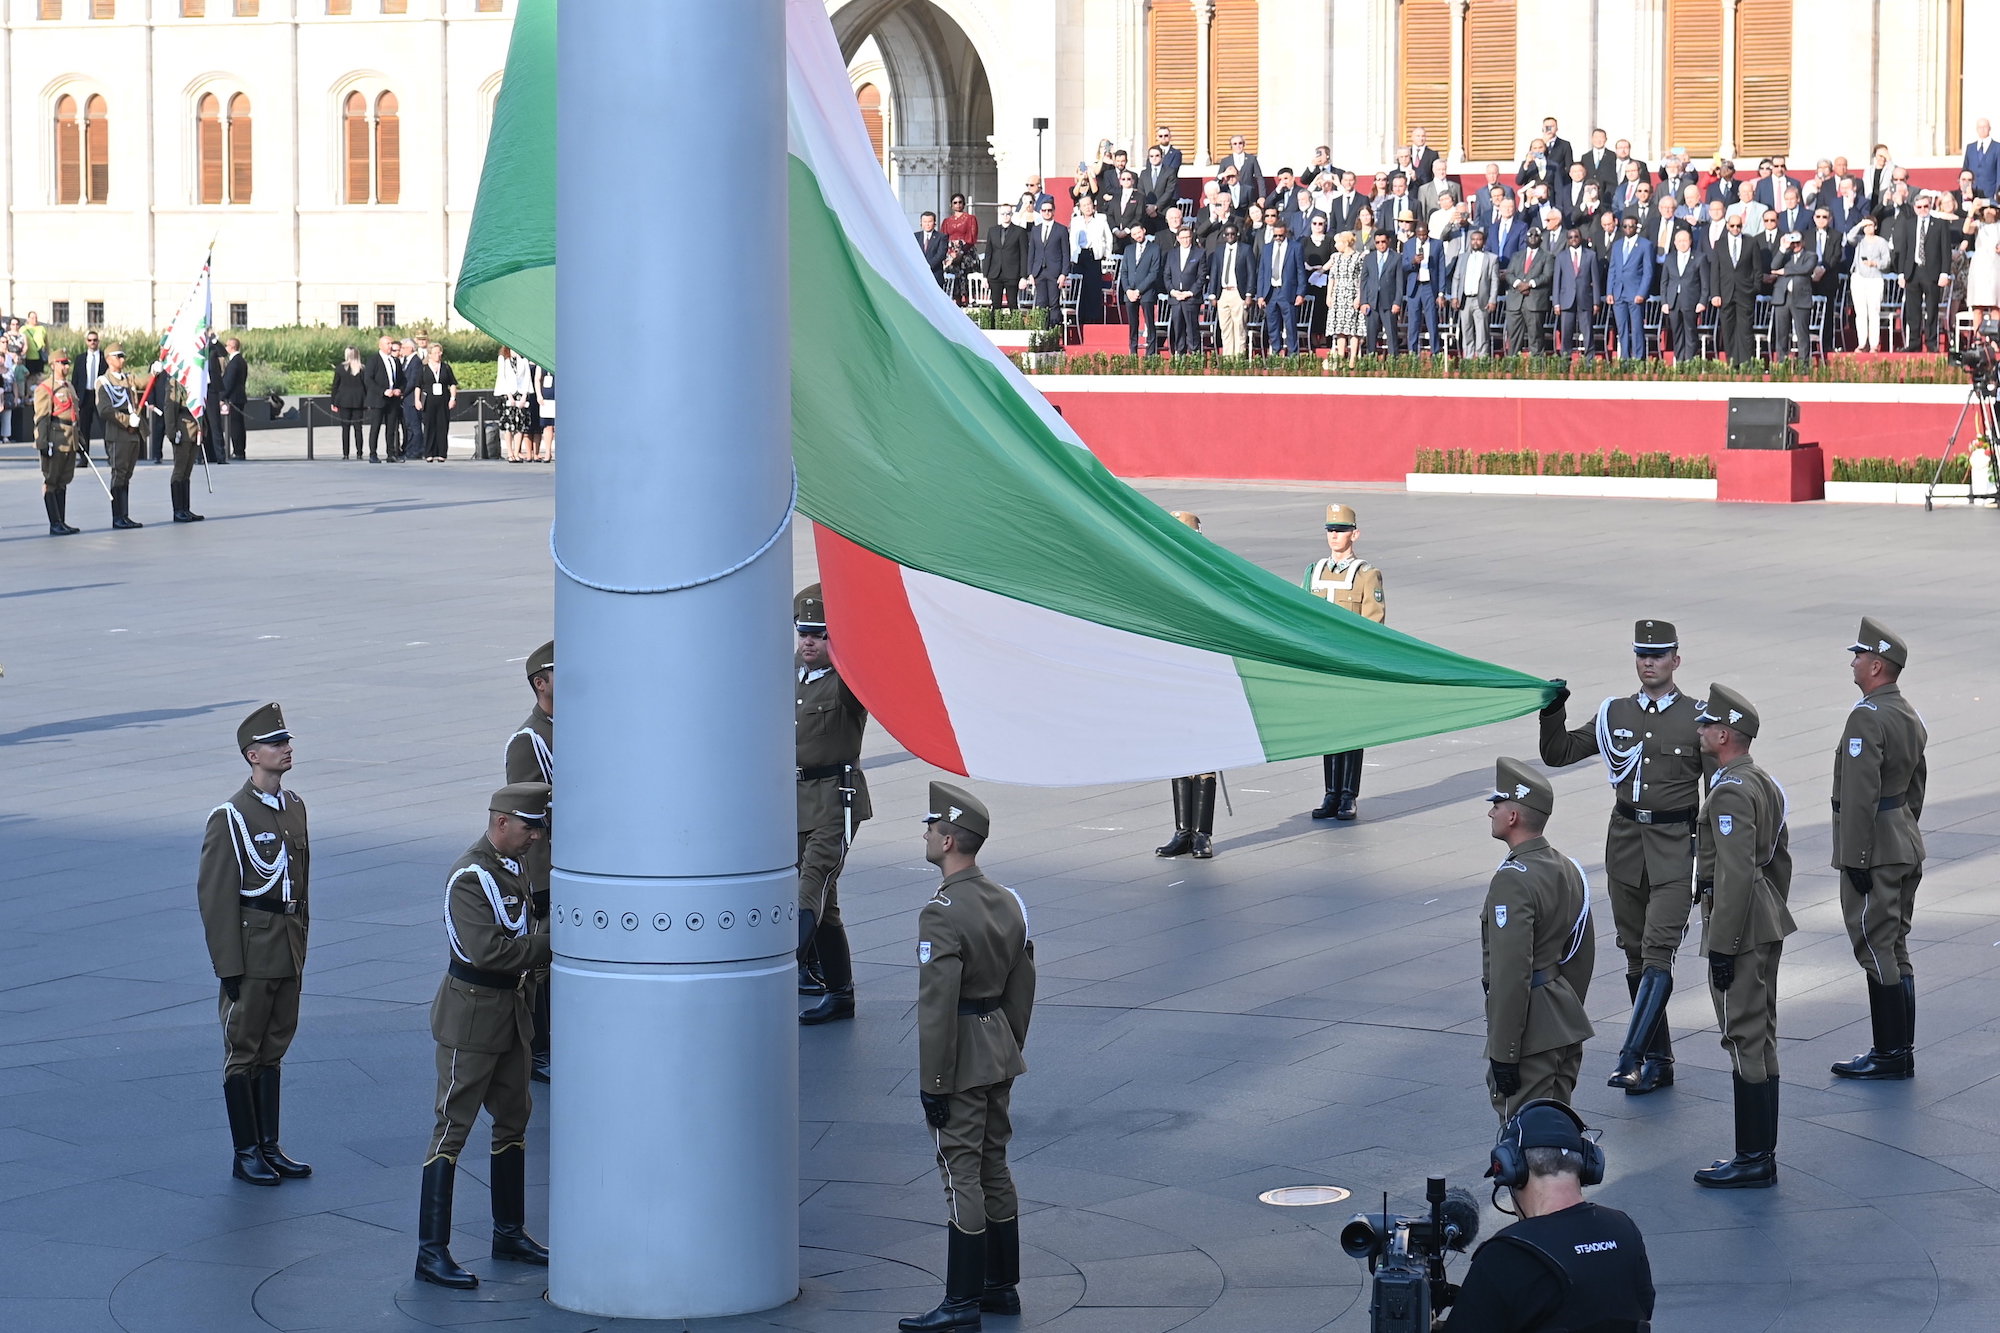 Katonai tiszteletadással felvonják Magyarország nemzeti lobogóját a Szent István-napi állami ünnepségen tartott zászlófelvonáson és tisztavatáson.